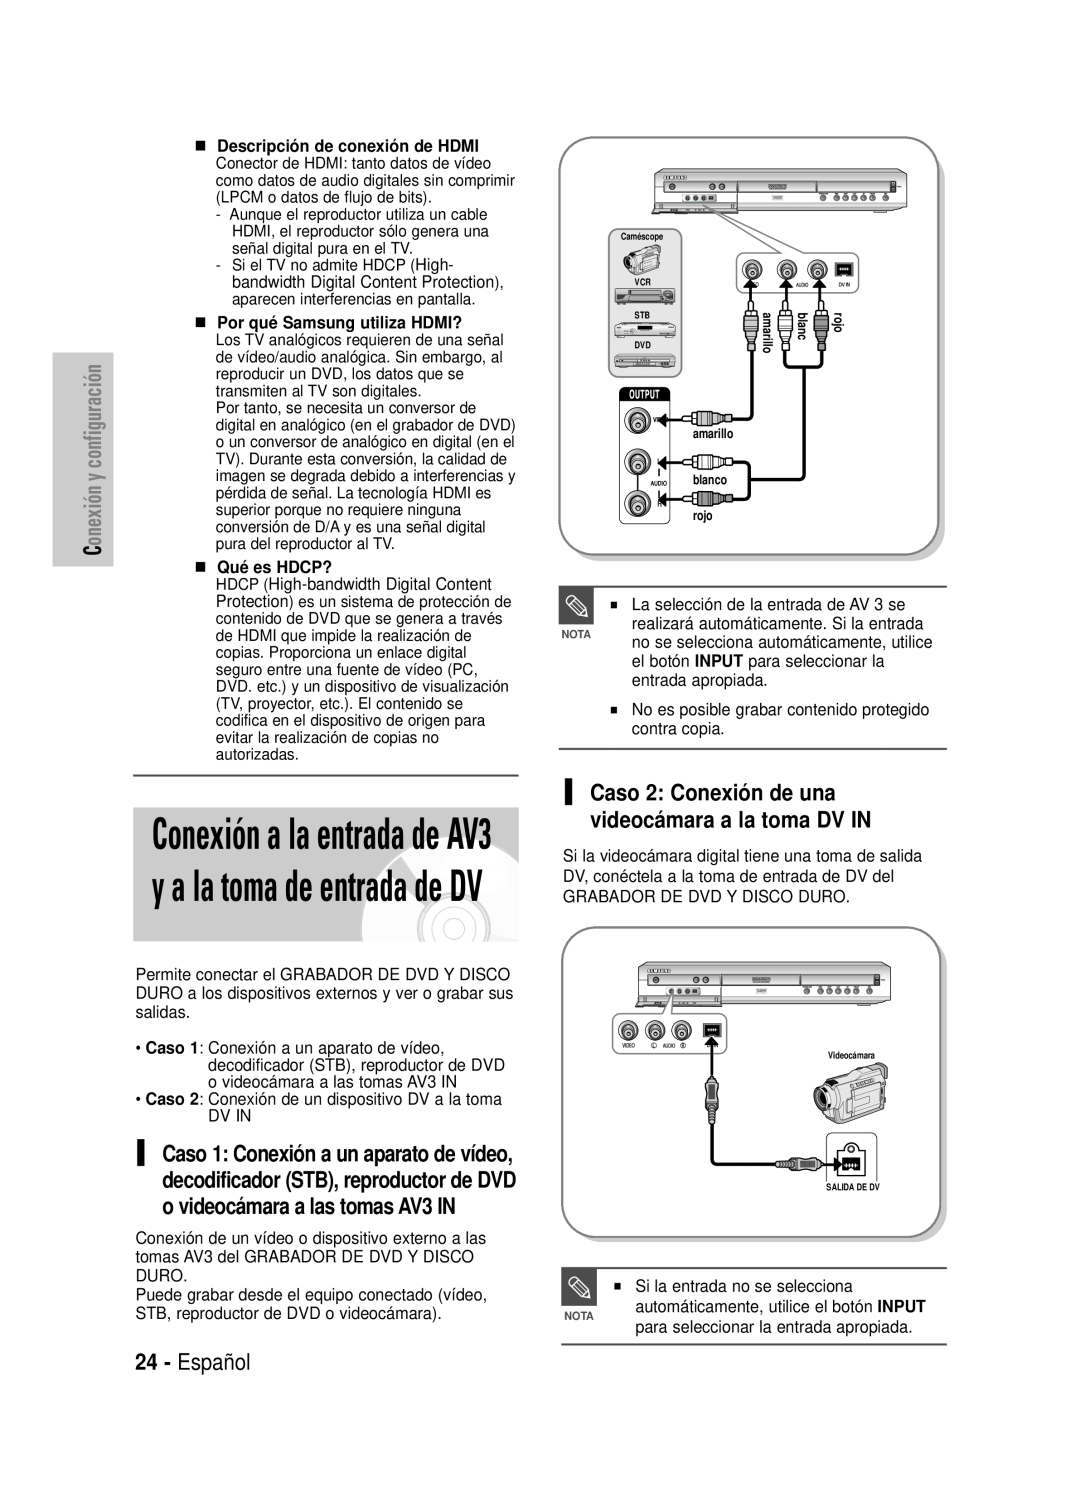 Samsung DVD-HR725/XEG manual Conexión a la entrada de AV3 y a la toma de entrada de DV, Español, Conexión y configuración 